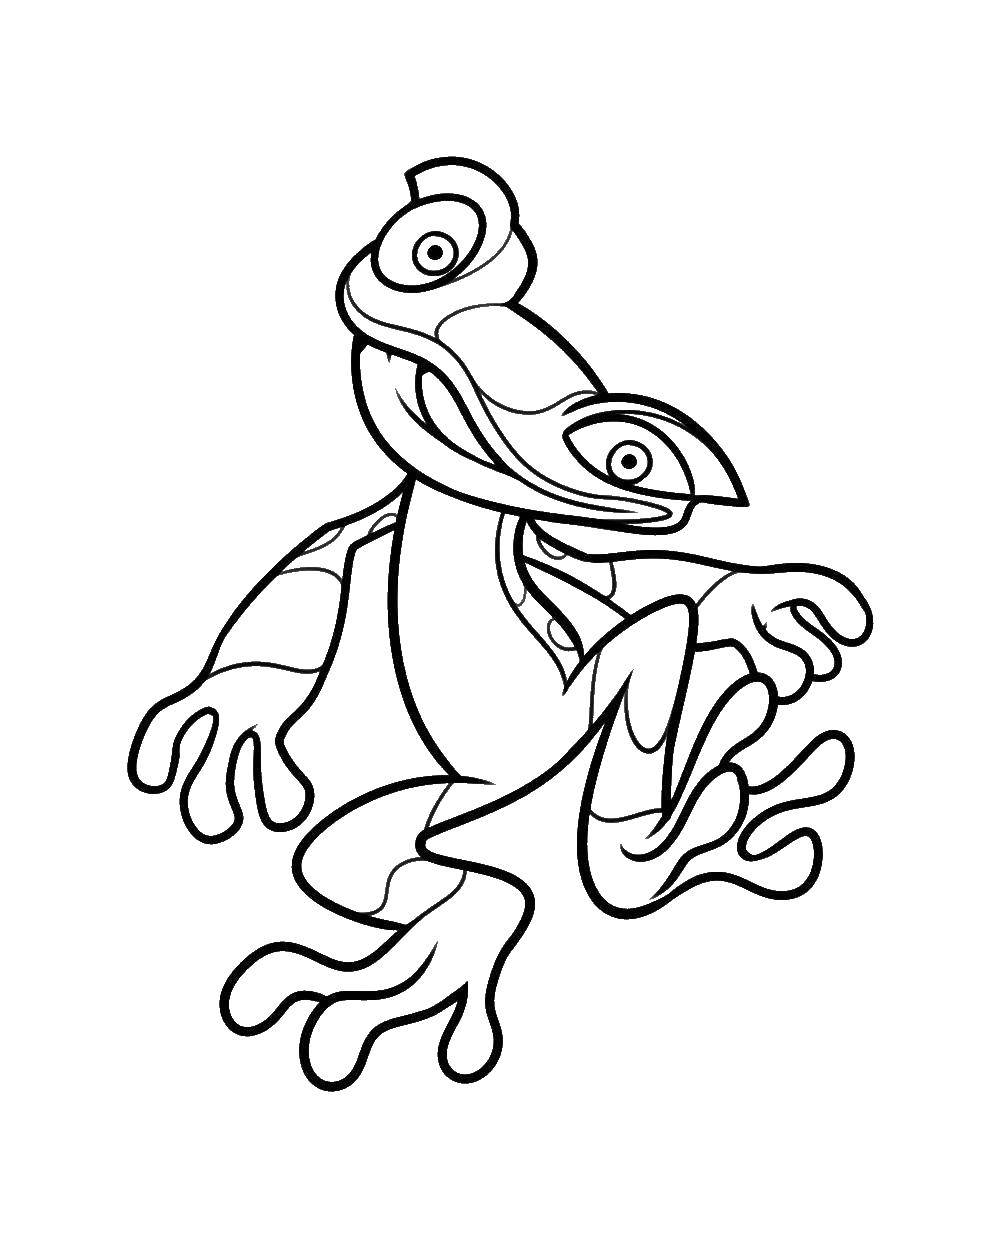 Опис: розмальовки  Жаба. Категорія: жаби. Теги:  жаба.